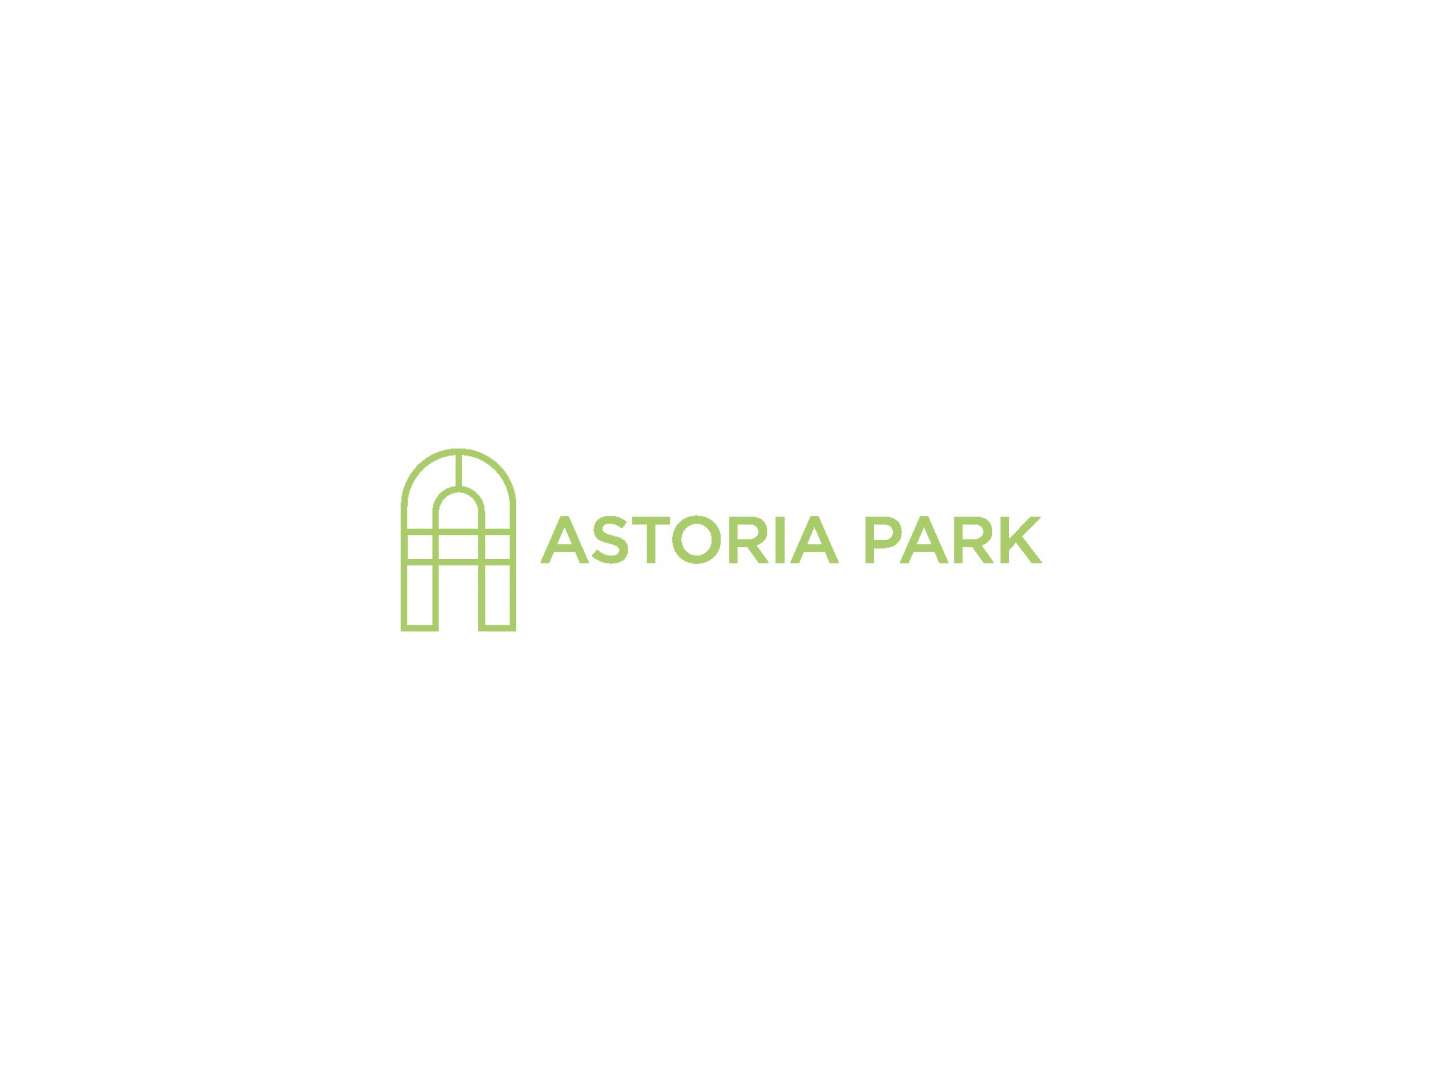 astoria park